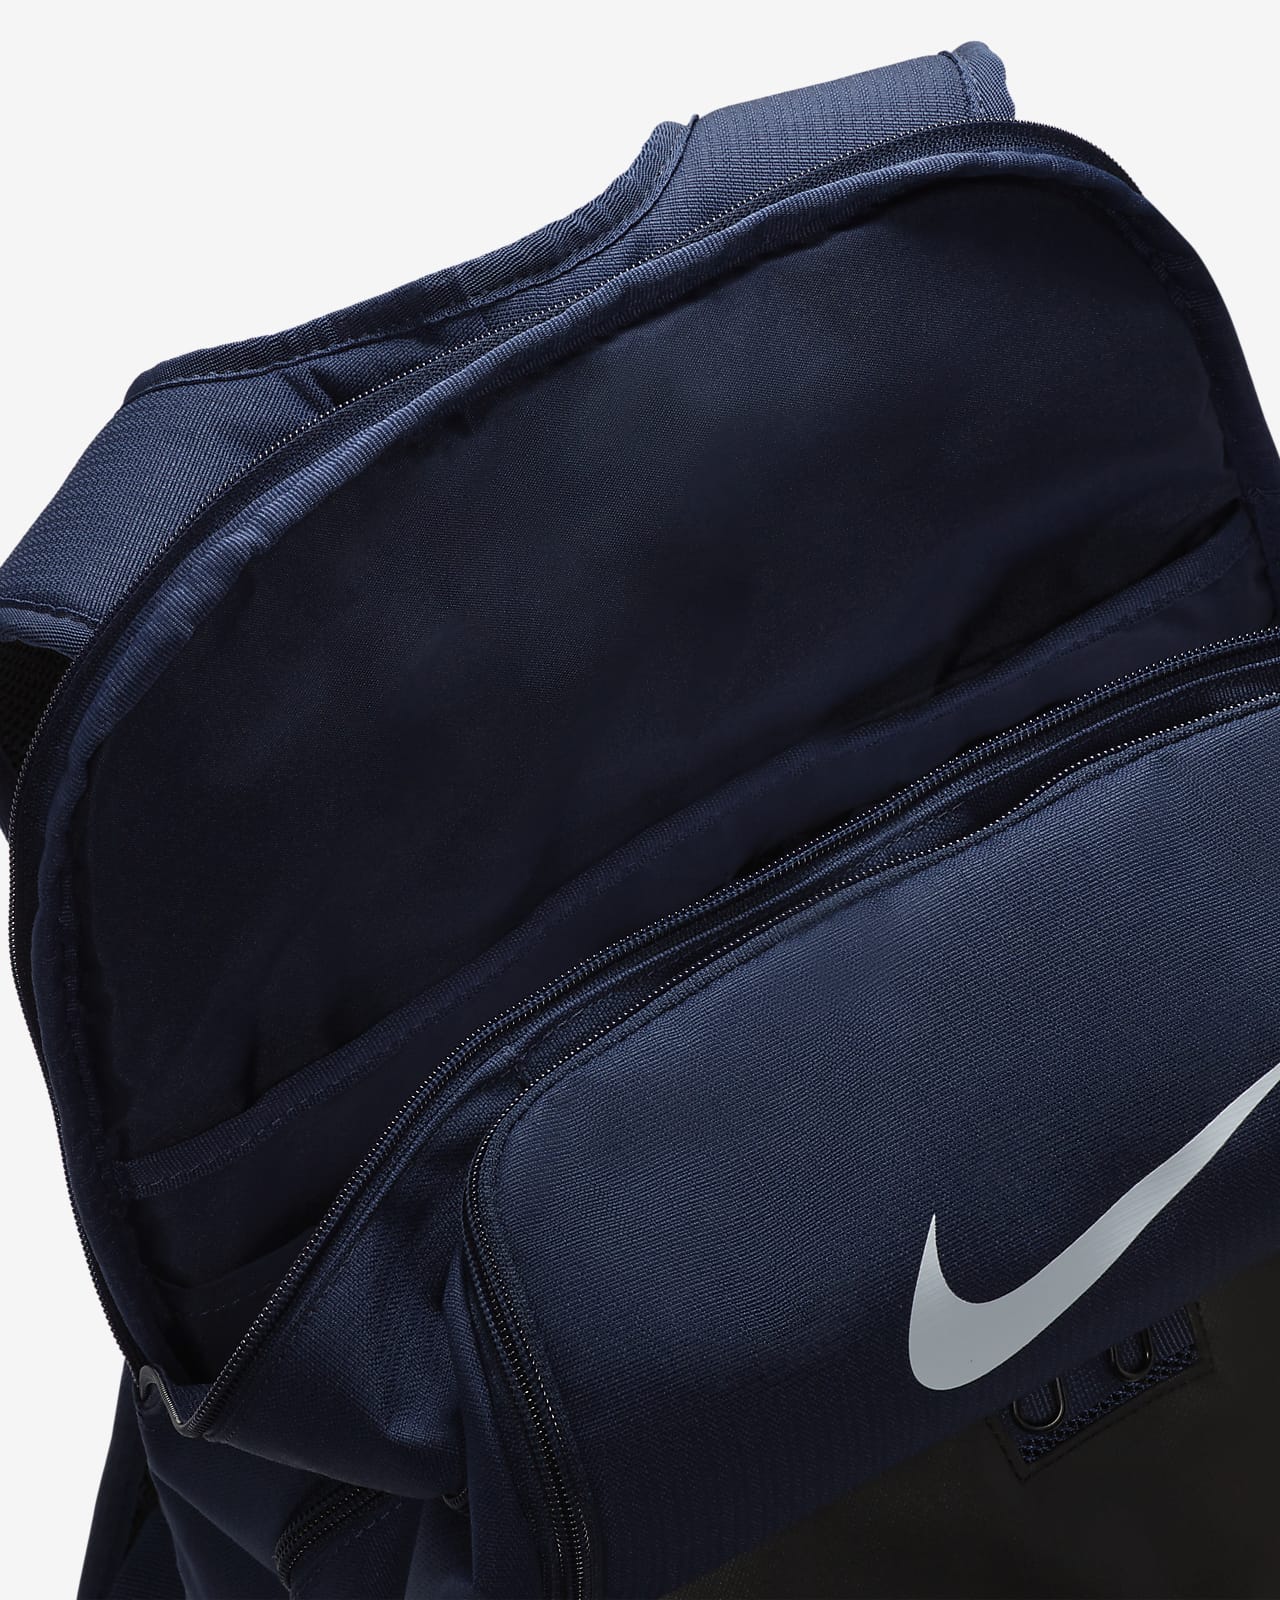 Nike Brasilia 9.5 Training Backpack (Extra Large, 30L). Nike.com